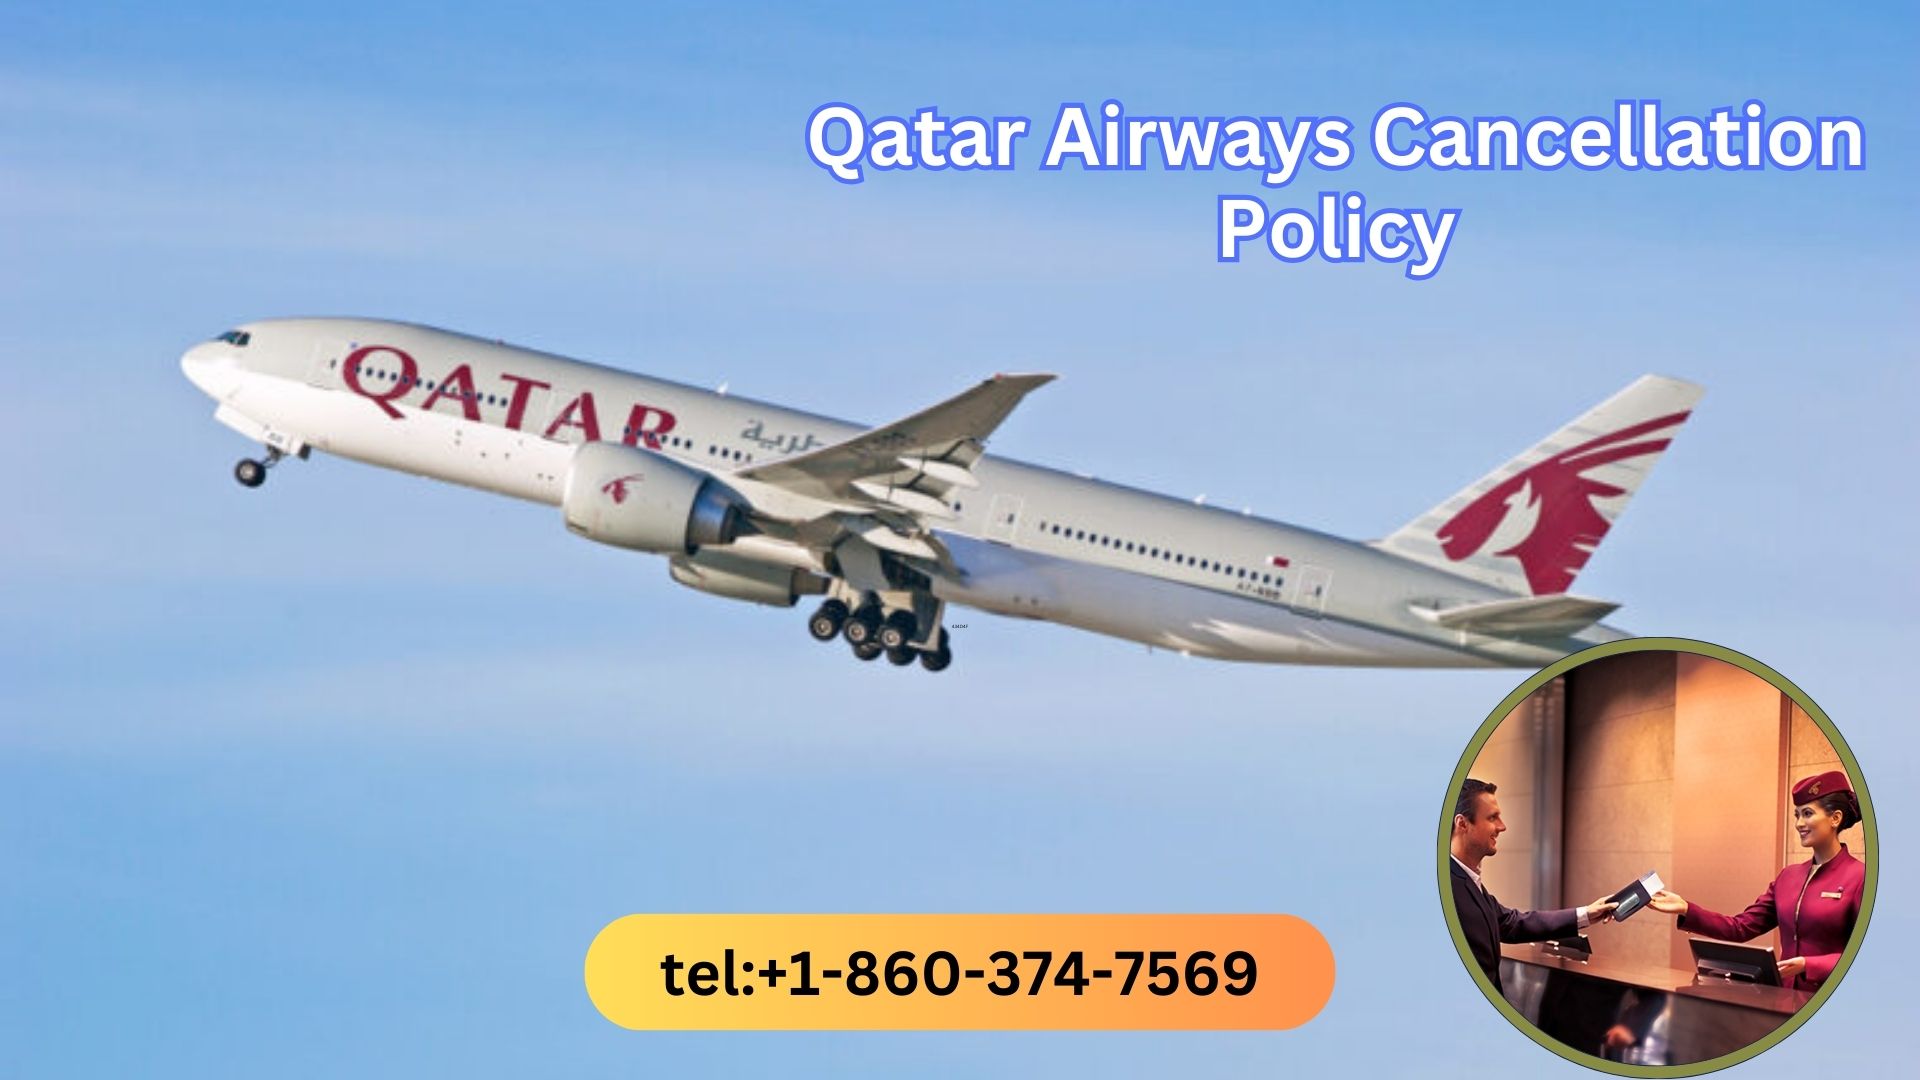 Qatar airways cancellation policy